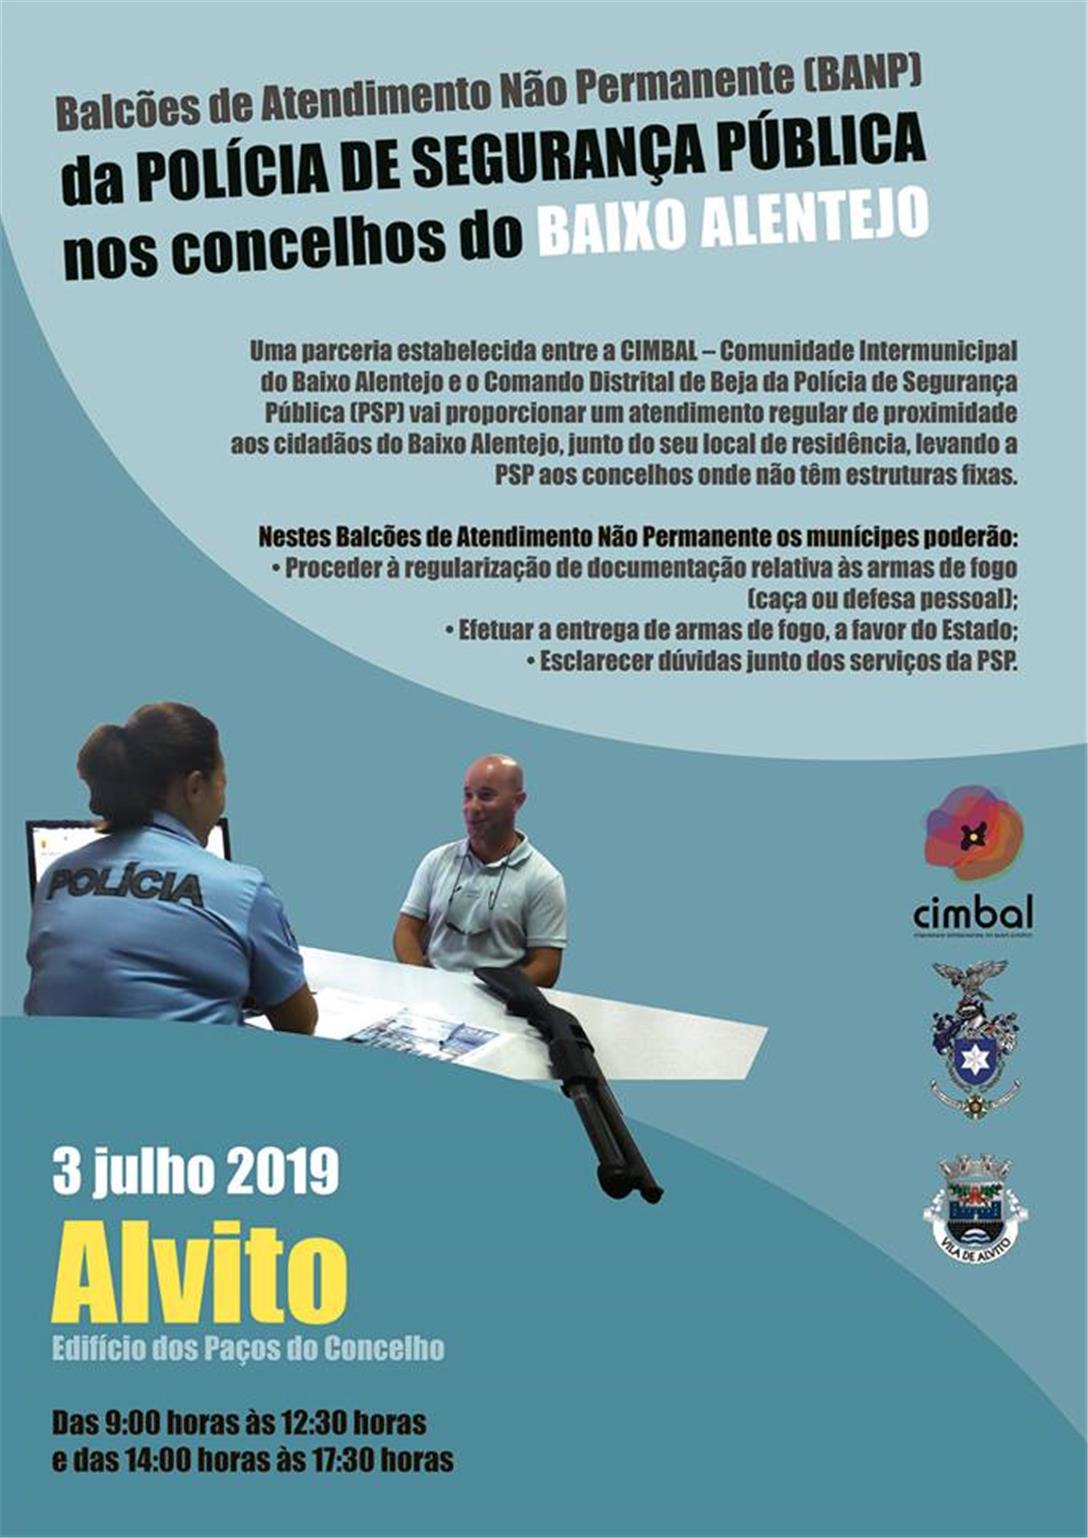 Balcões de Atendimento não Permanente da Polícia de Segurança Pública nos Concelhos do Baixo Alentejo